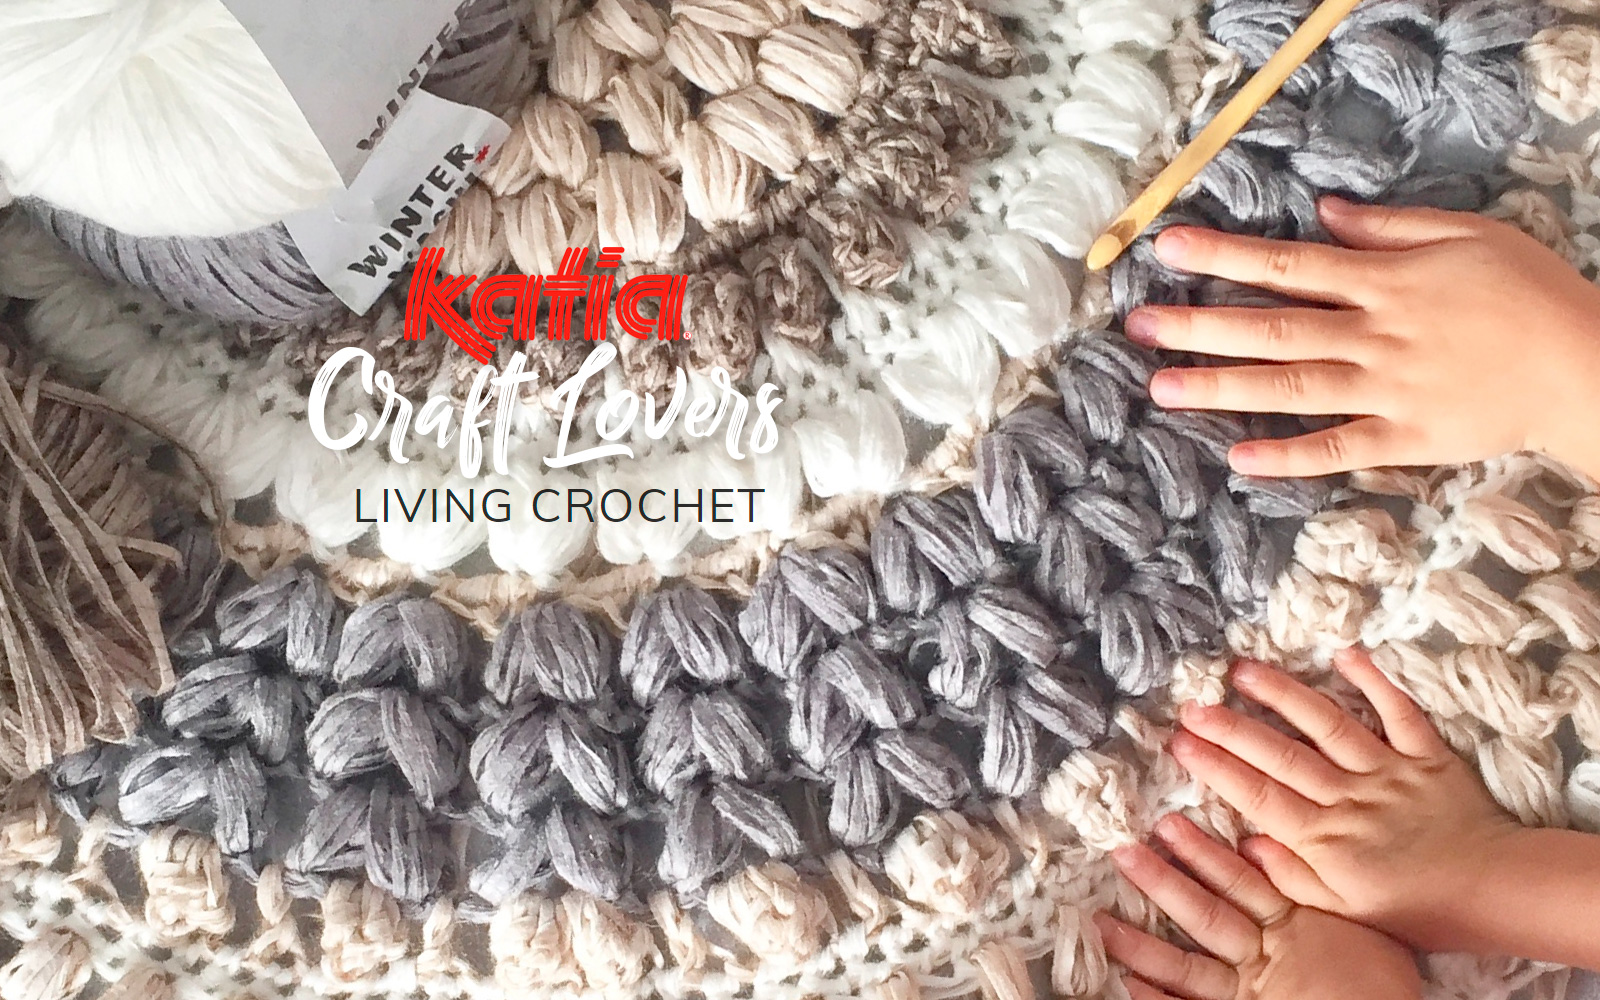 Ongebruikt Living Crochet leert je hoe je een vloerkleed moet haken met KN-88